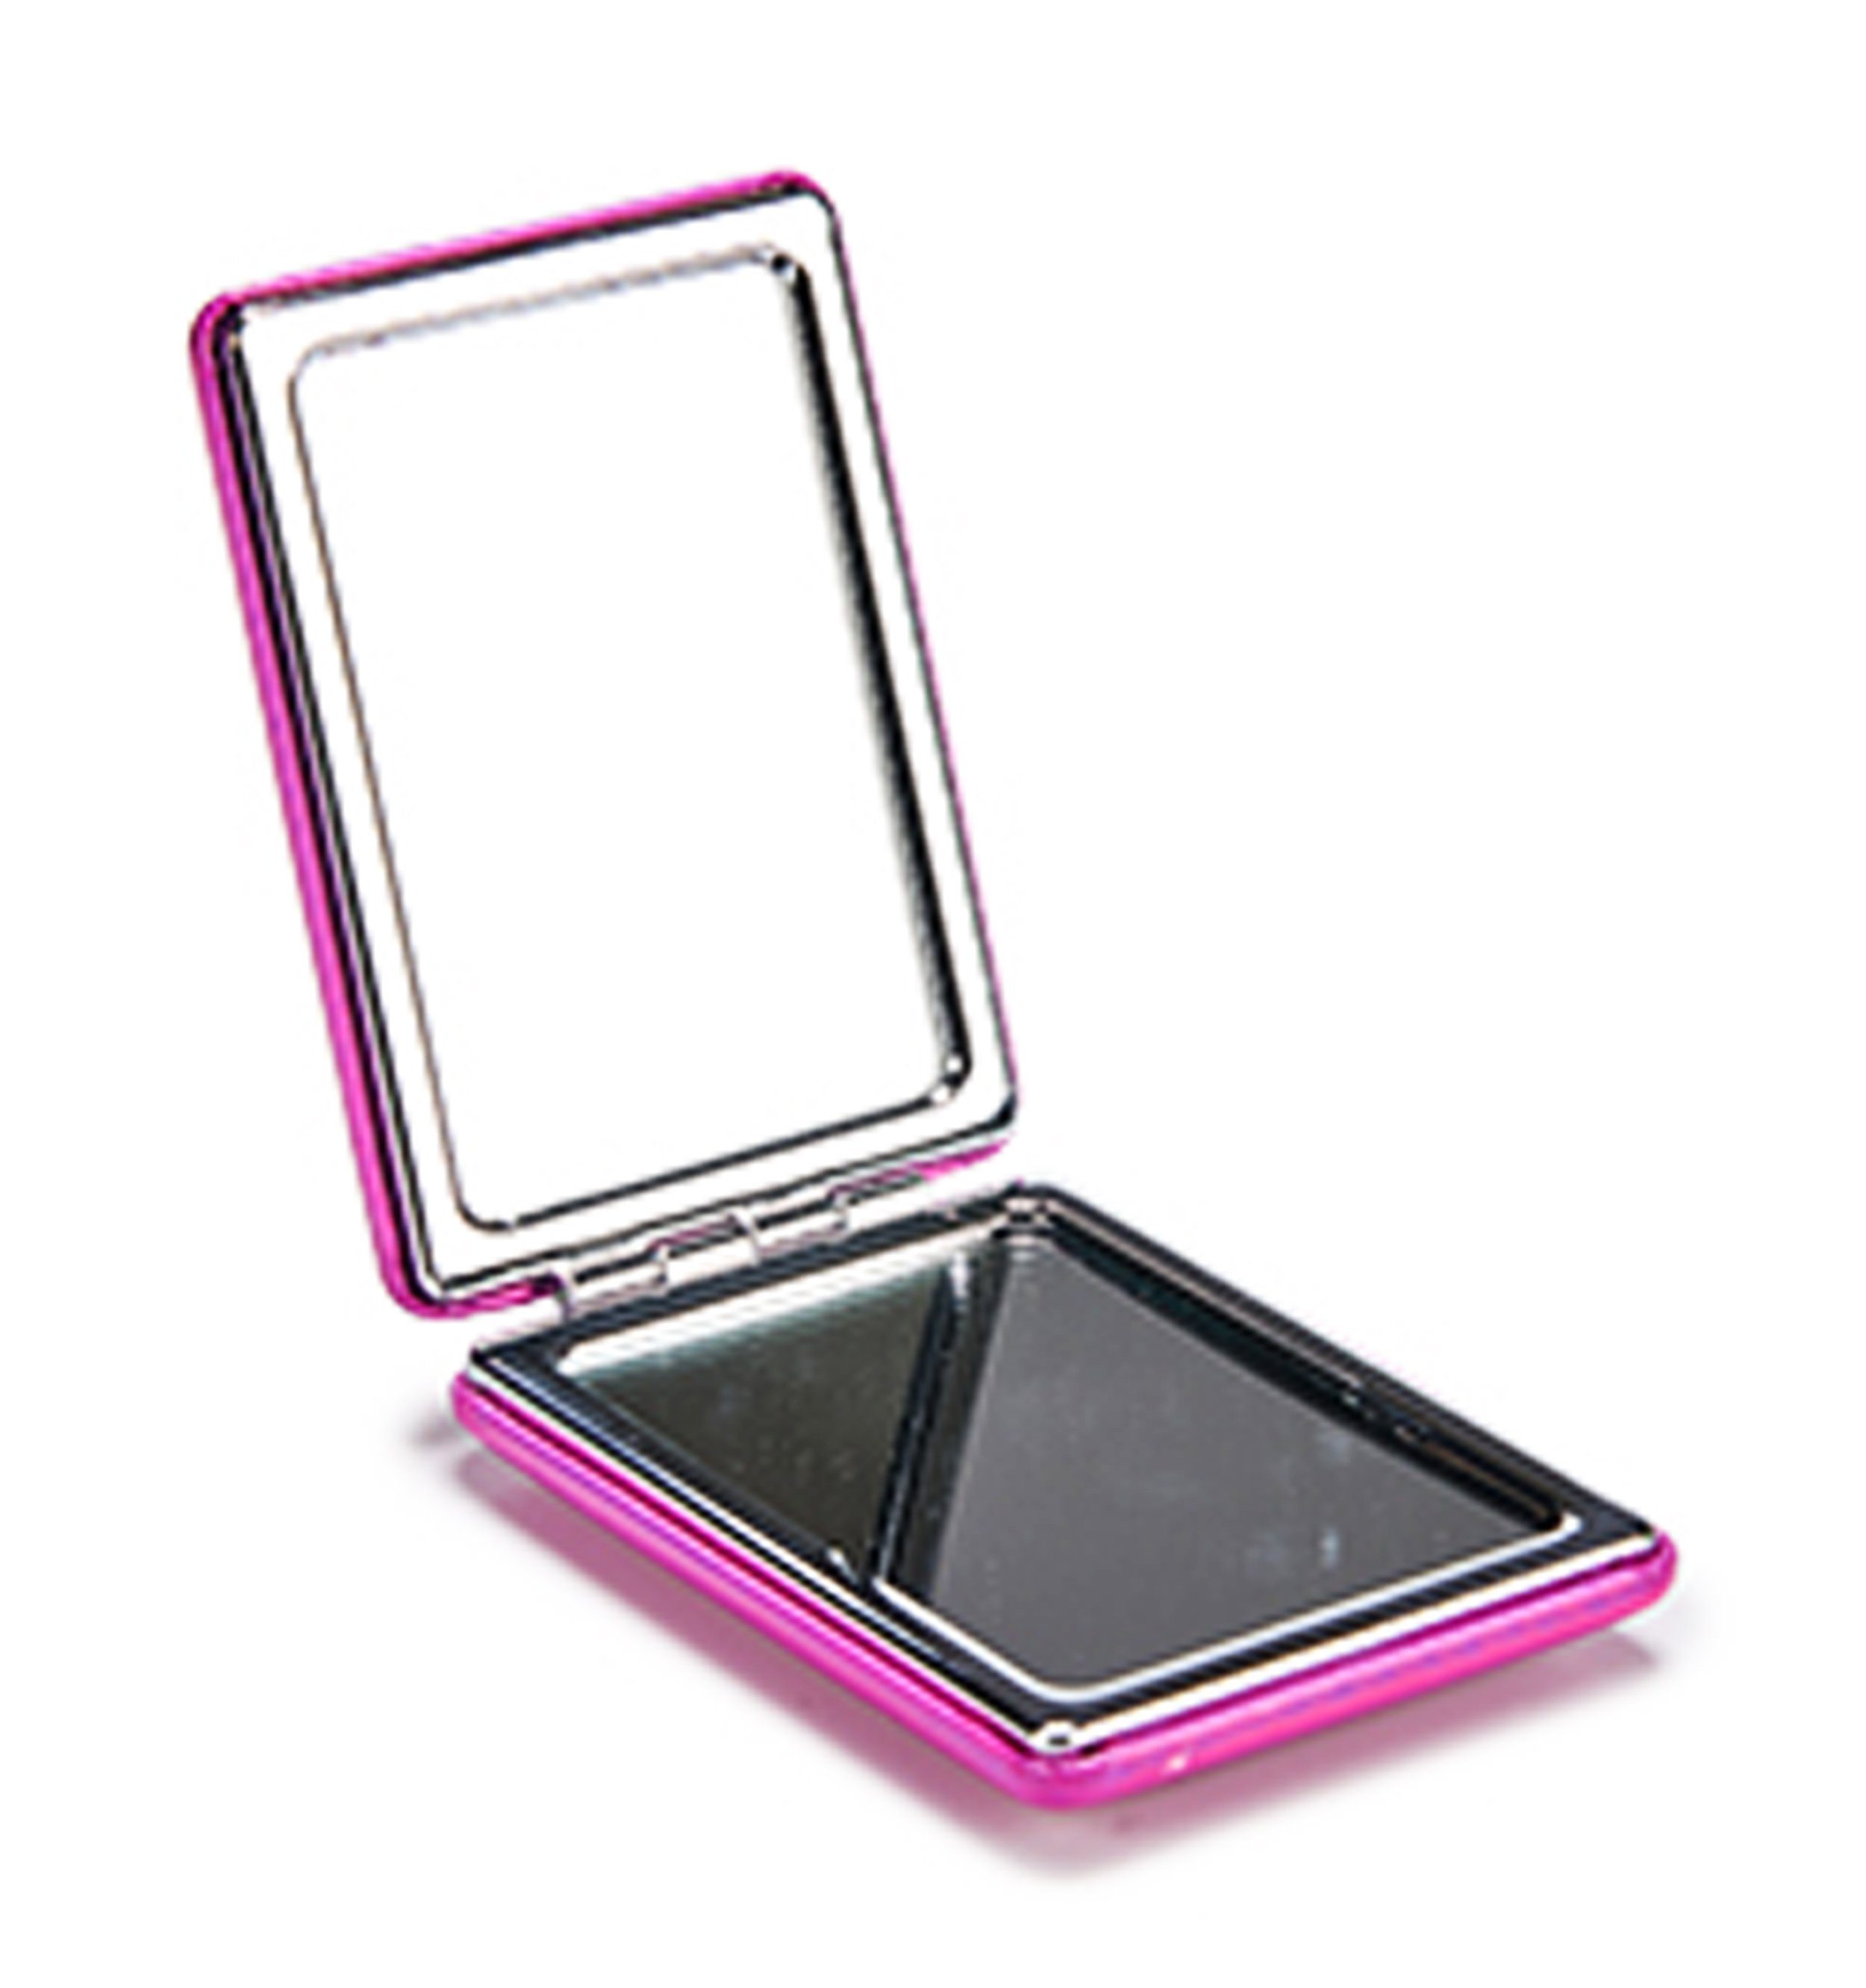 Taschenspiegel TASCHENSPIEGEL doppelseitig (Hellblau), Make-up Spiegel Kosmetikspiegel 10 klappbar